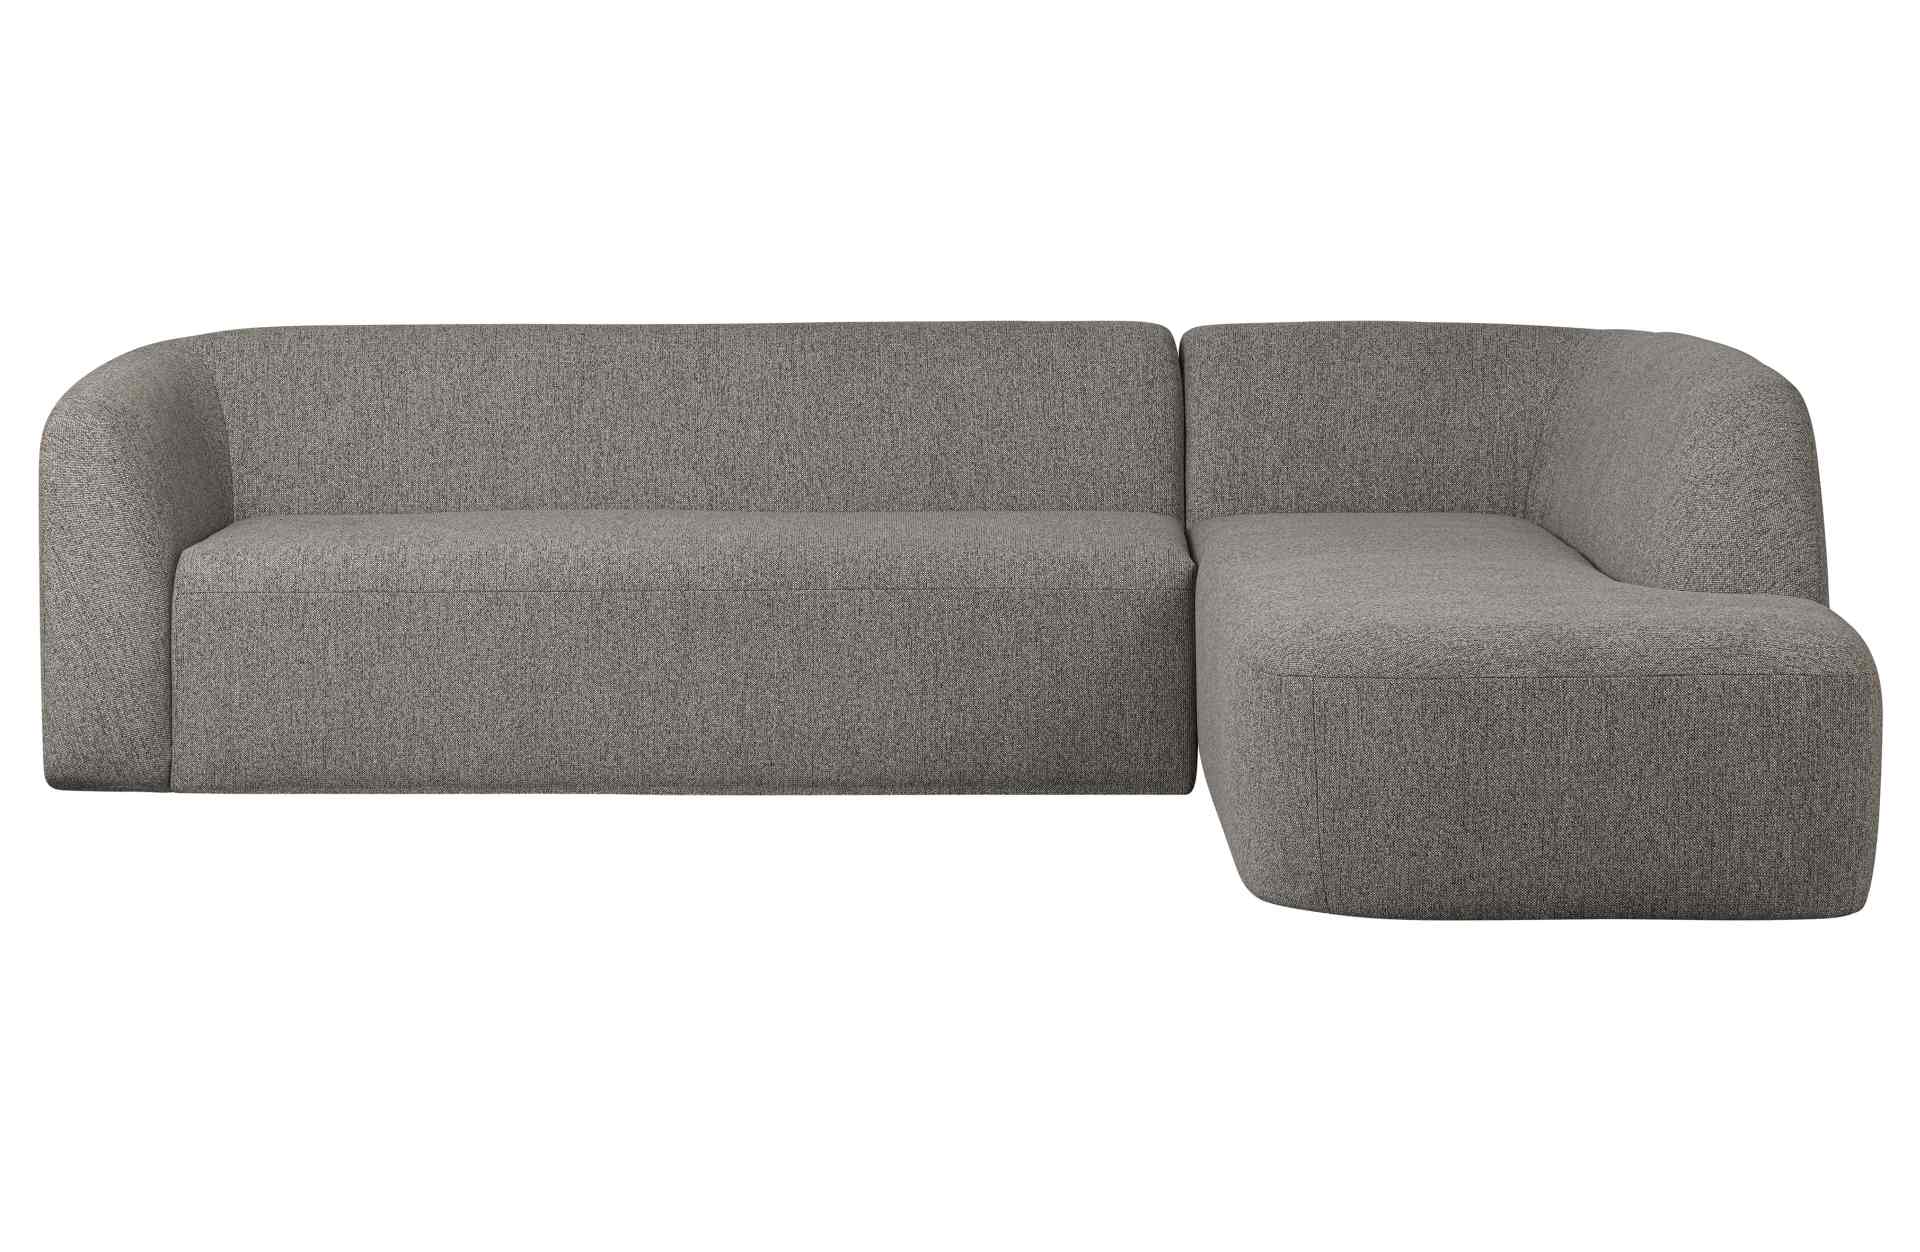 Das Ecksofa Sloping wurde aus bequemen Stoff gefertigt, welcher einen Grauen Farbton besitzt. Das Sofa ist ein echter Hingucker für dein Zuhause, denn es hat ein modernes Design, welches zu jeder Inneneinrichtung passt.